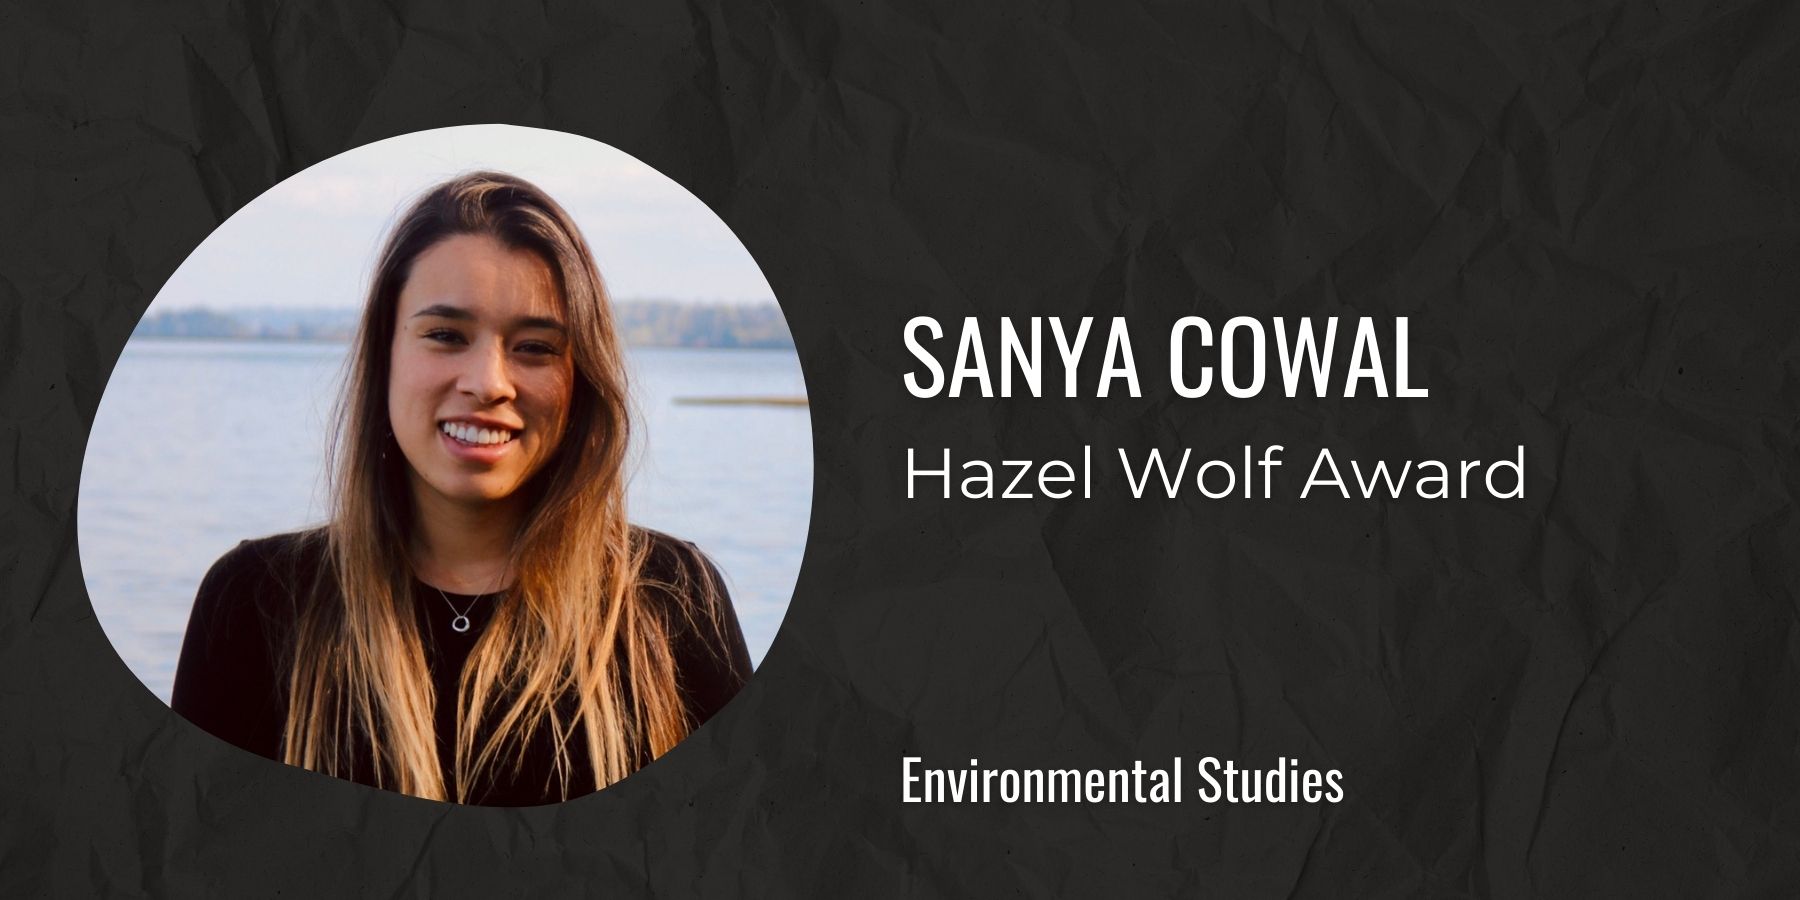 Image of Sanya Cowal with text: Hazel Wolf Award, Environmental Studies
